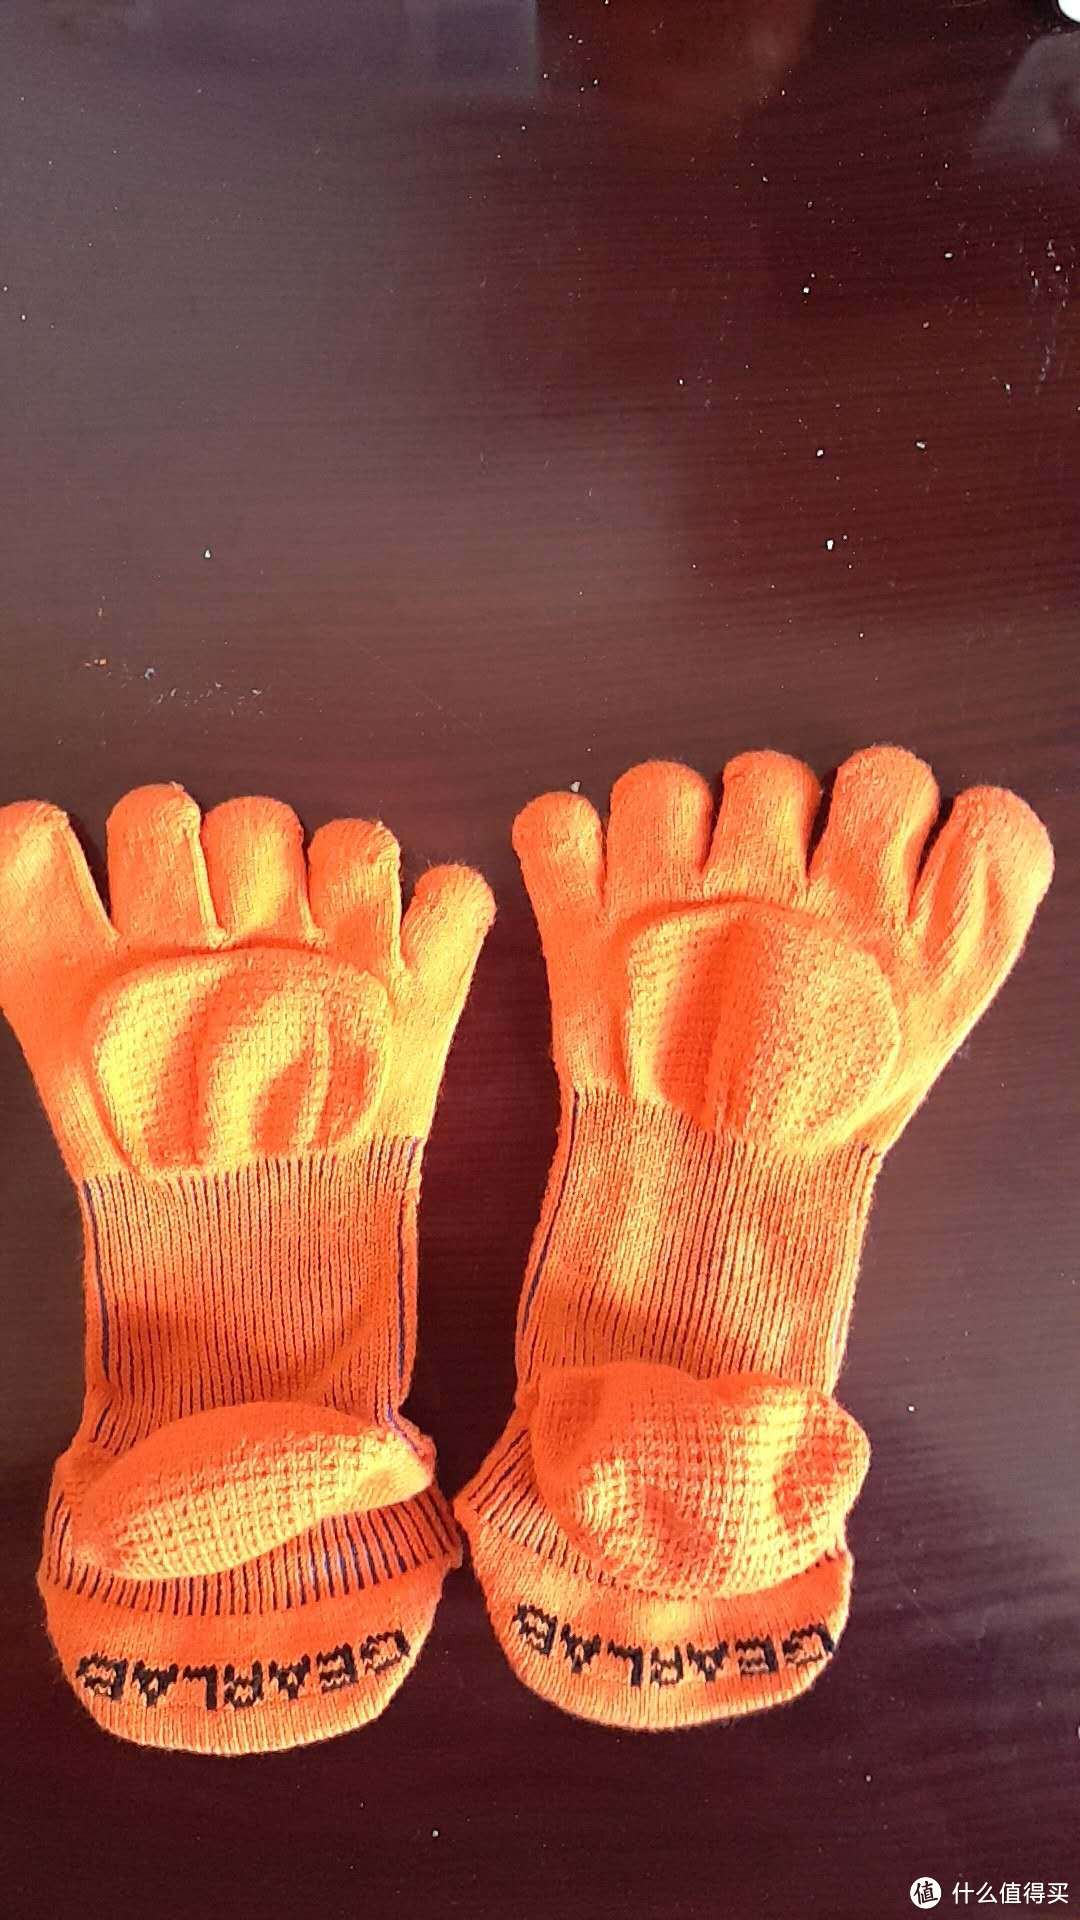 压缩的五指袜—GEARLAB燃烧装备实验室3D压力五指袜2.0